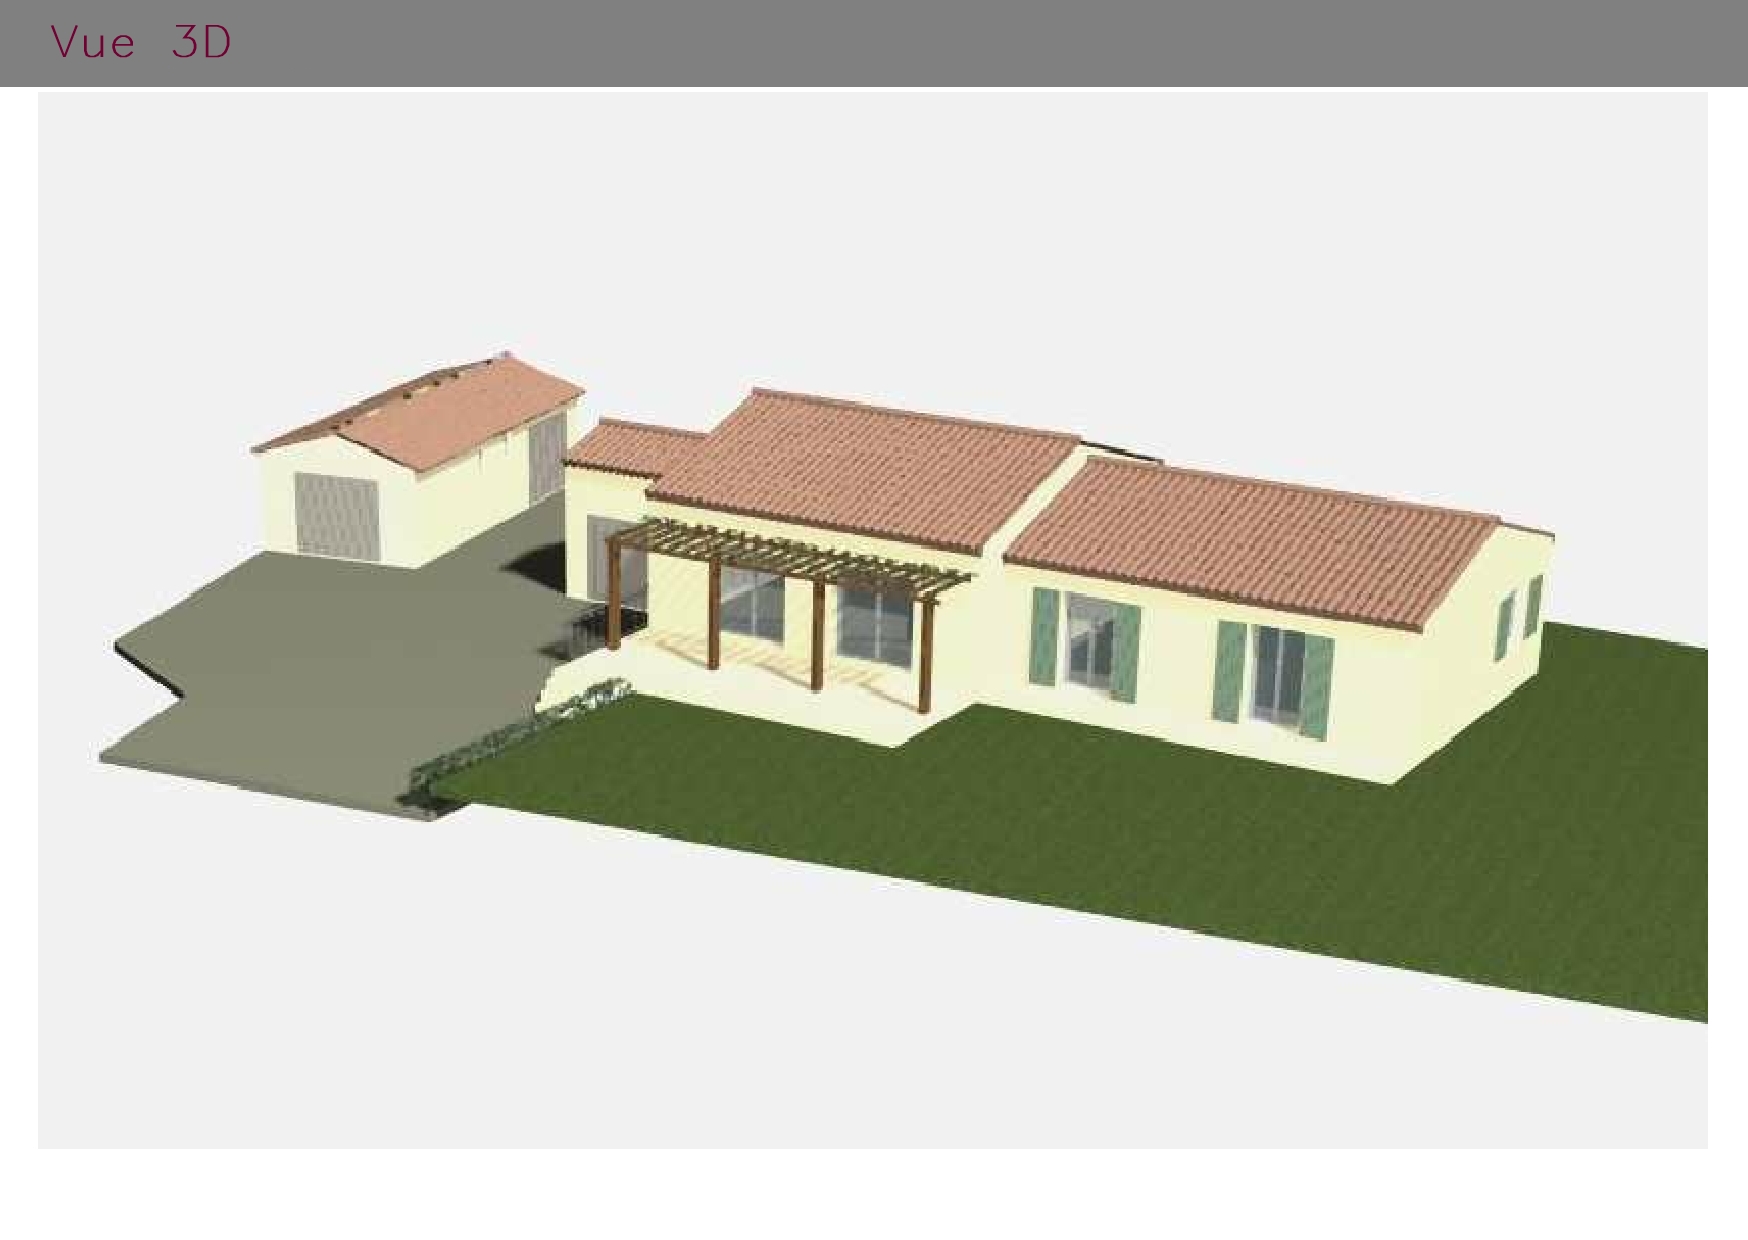 Maison modélisée en 3D